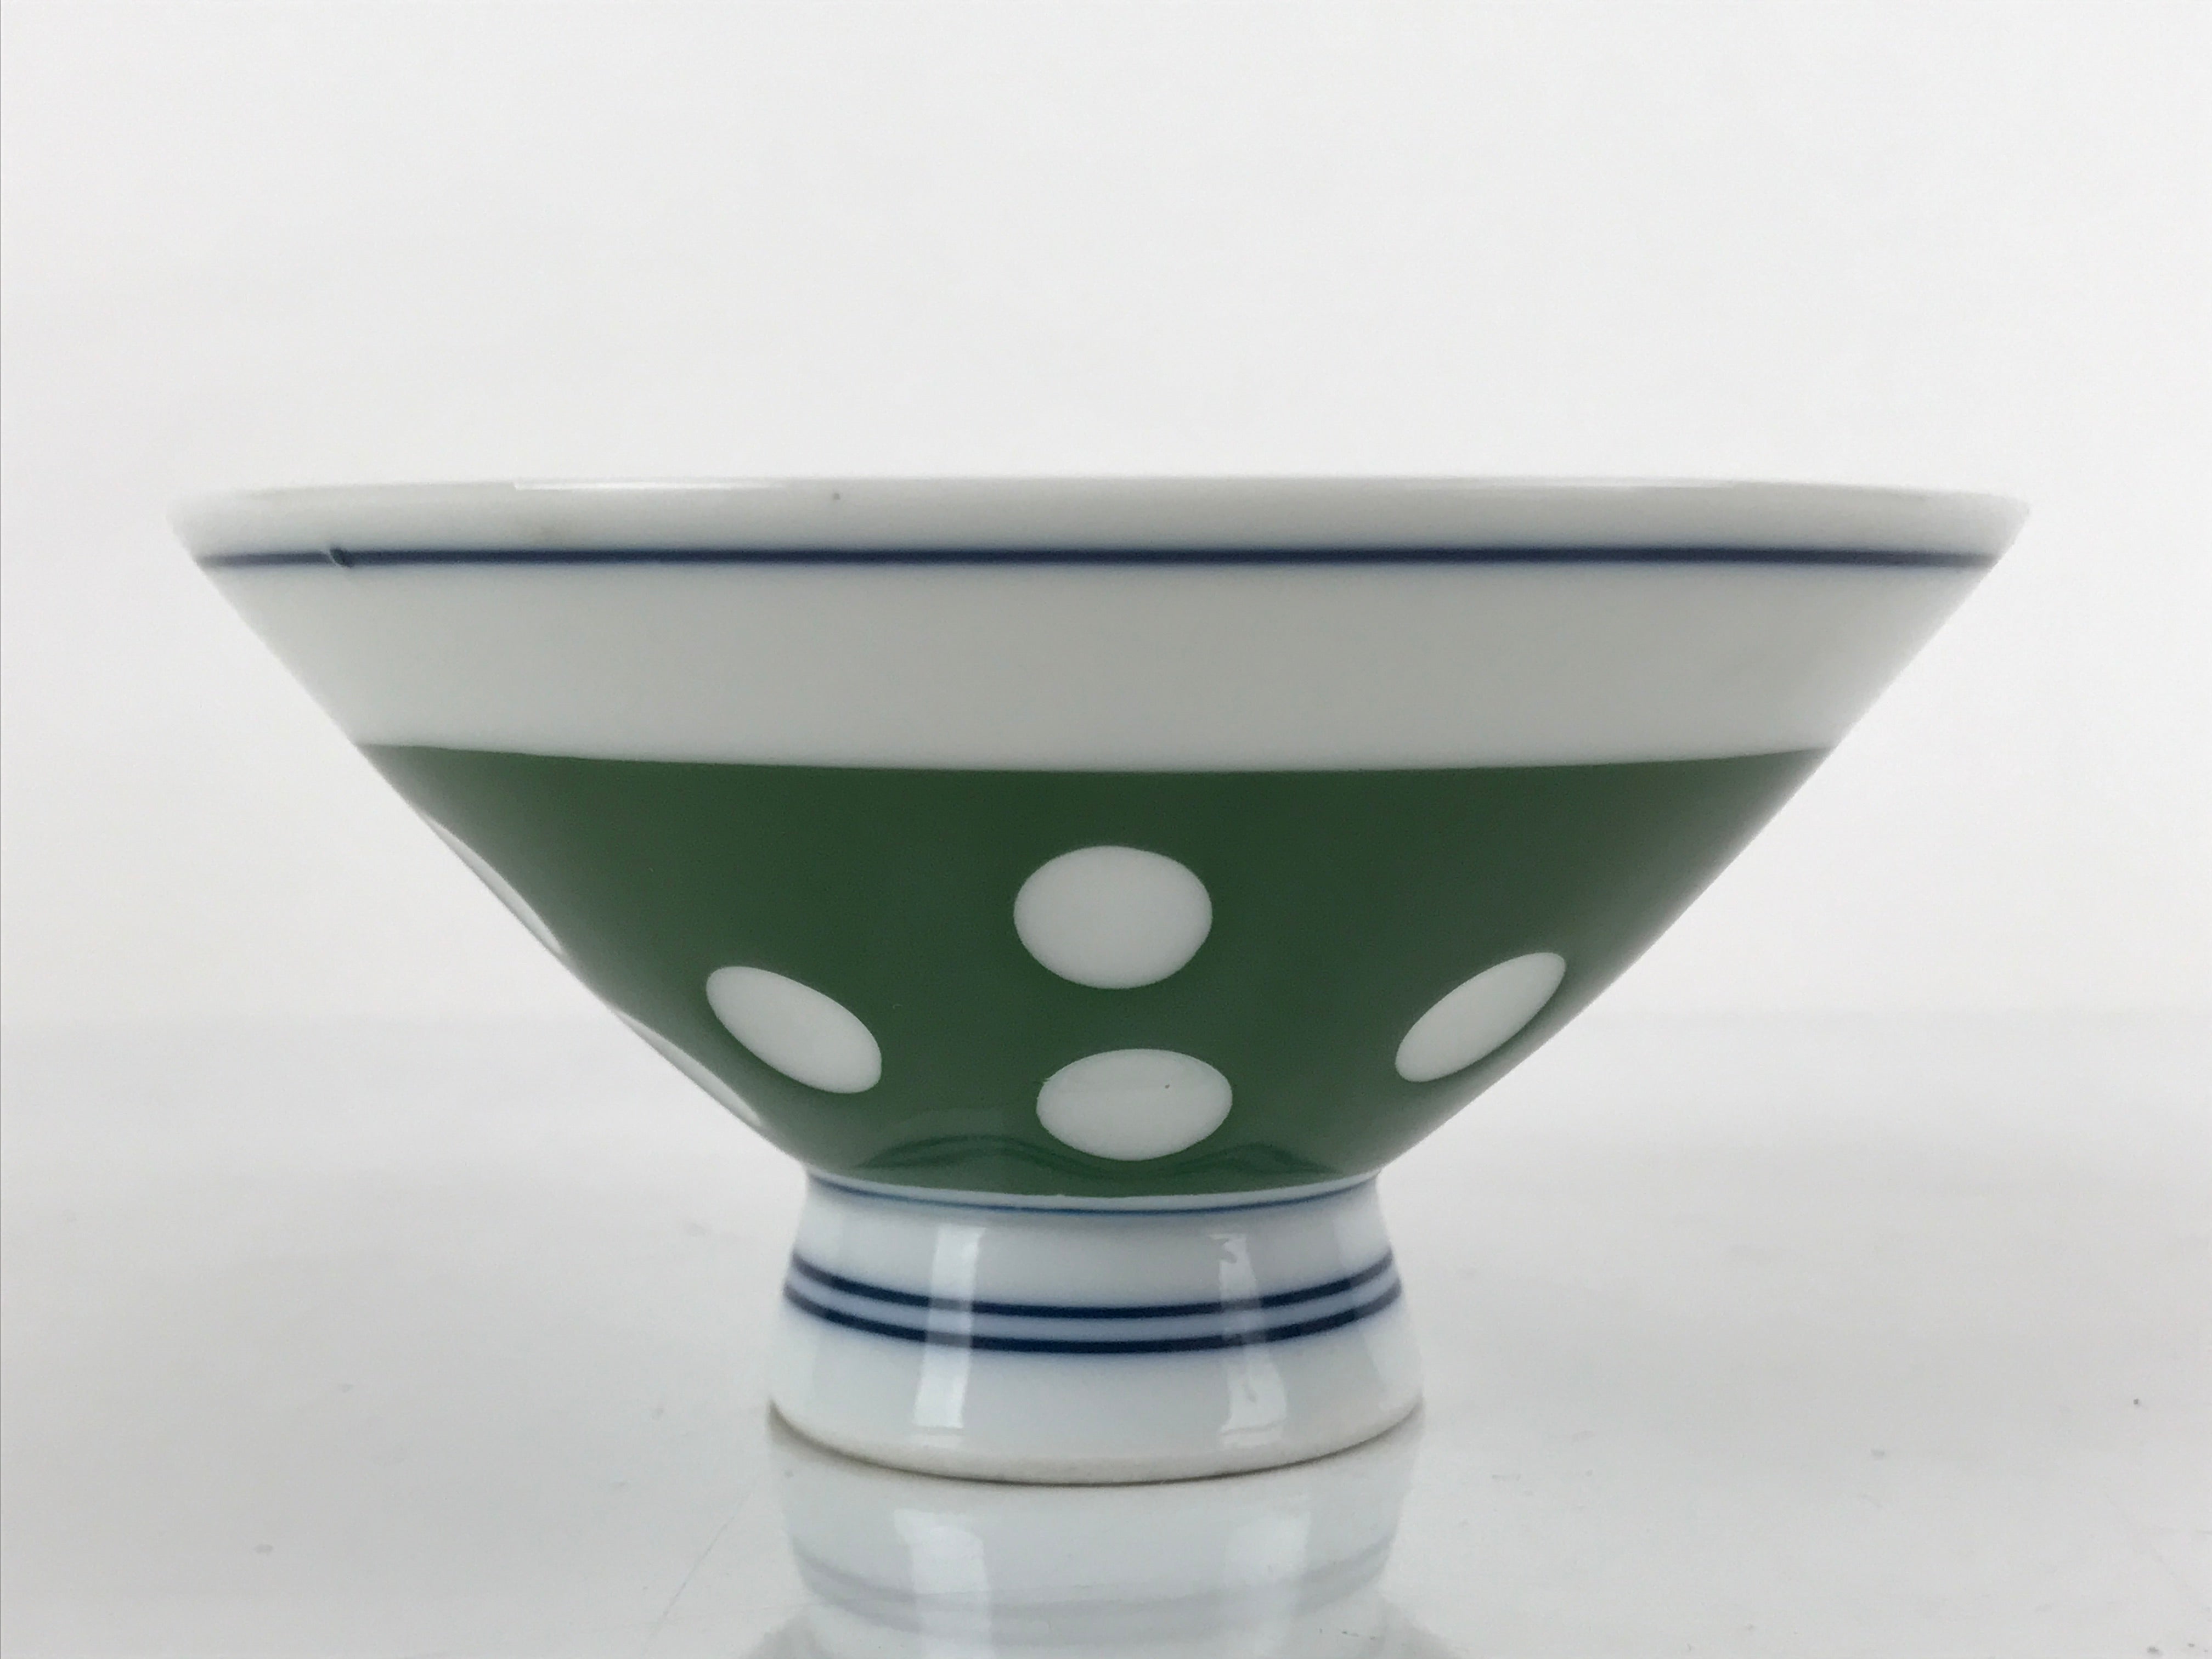 Japanese Porcelain Rice Bowl Vtg Wide Green Polka Dot Design White Blue PY729